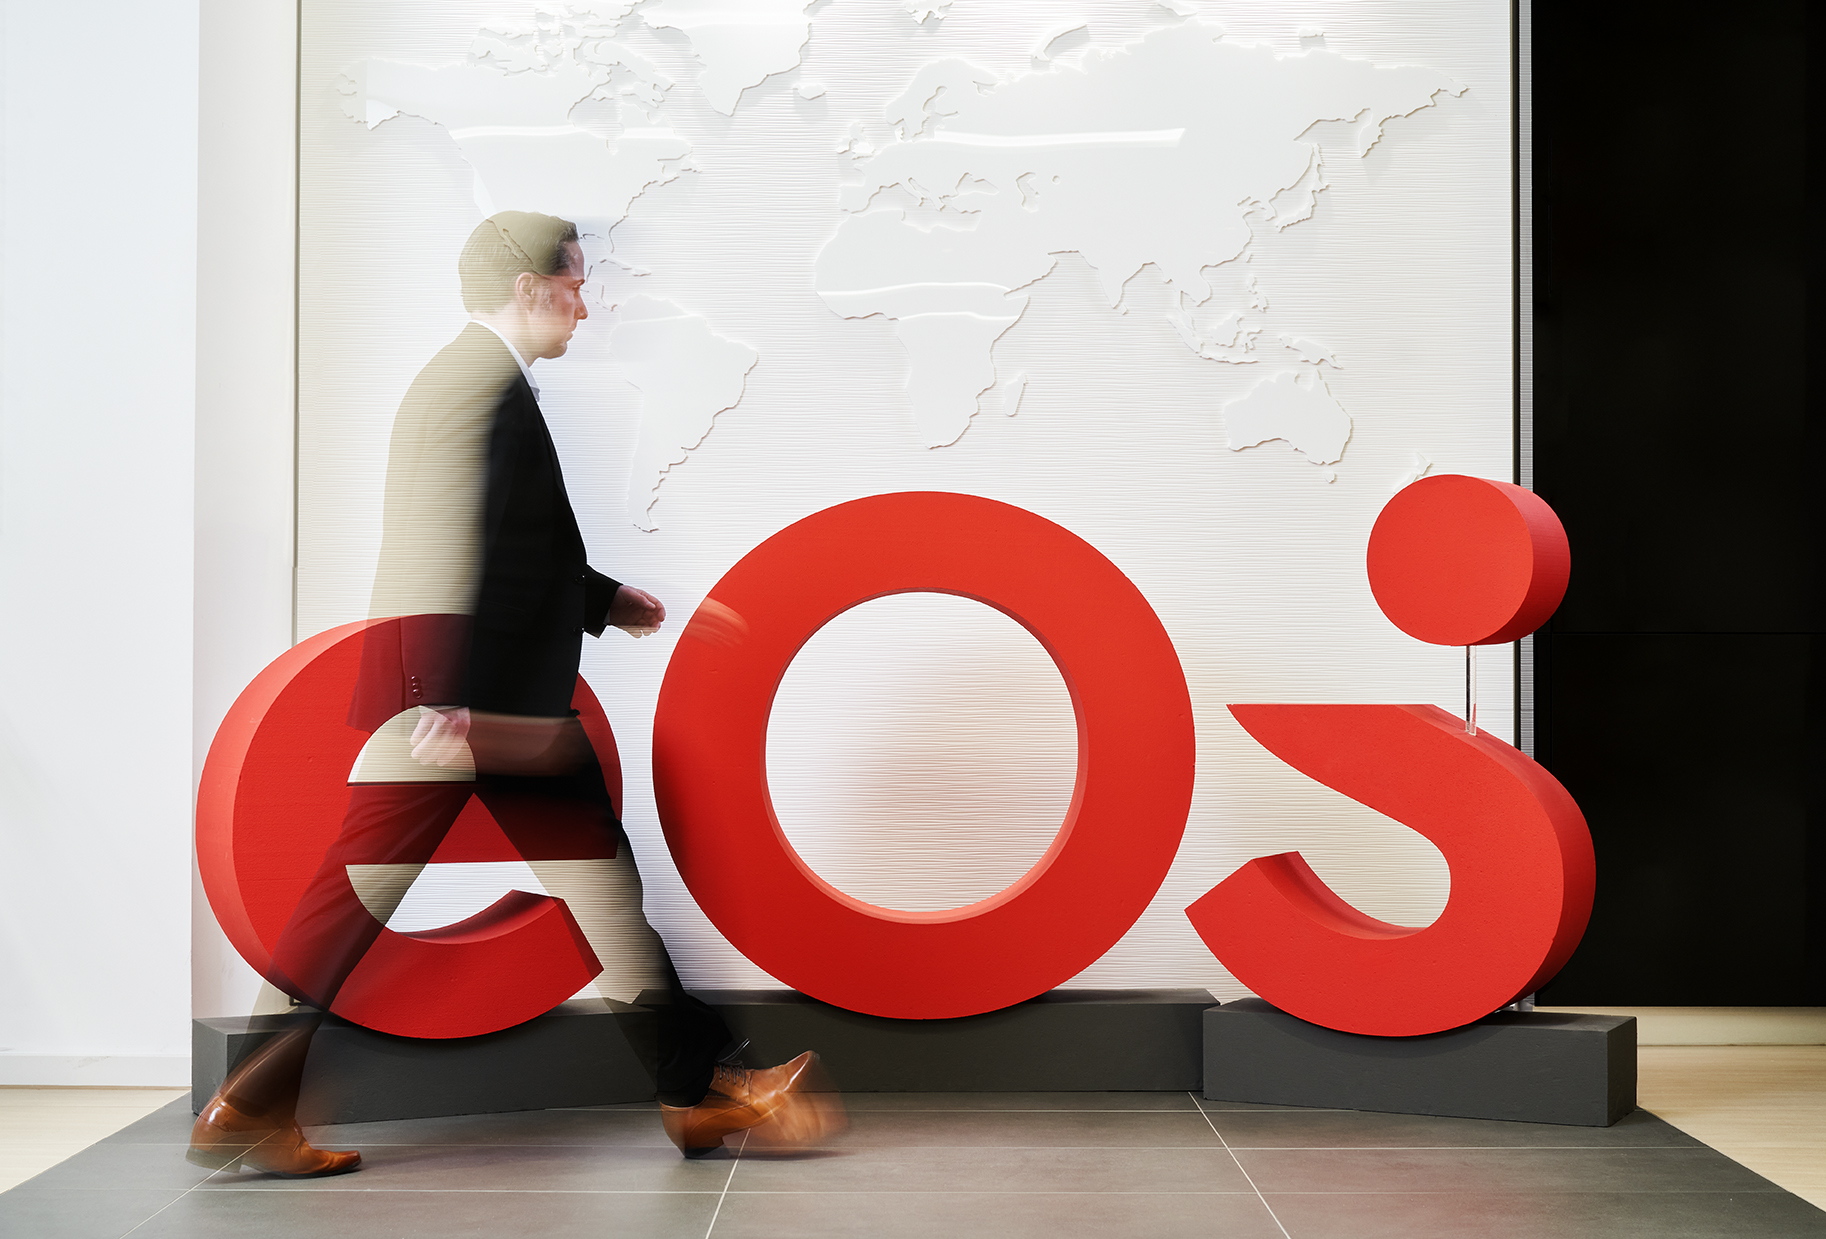 Así es la nueva marca EOS: El nuevo logotipo adorna el lobby de la sede de EOS.